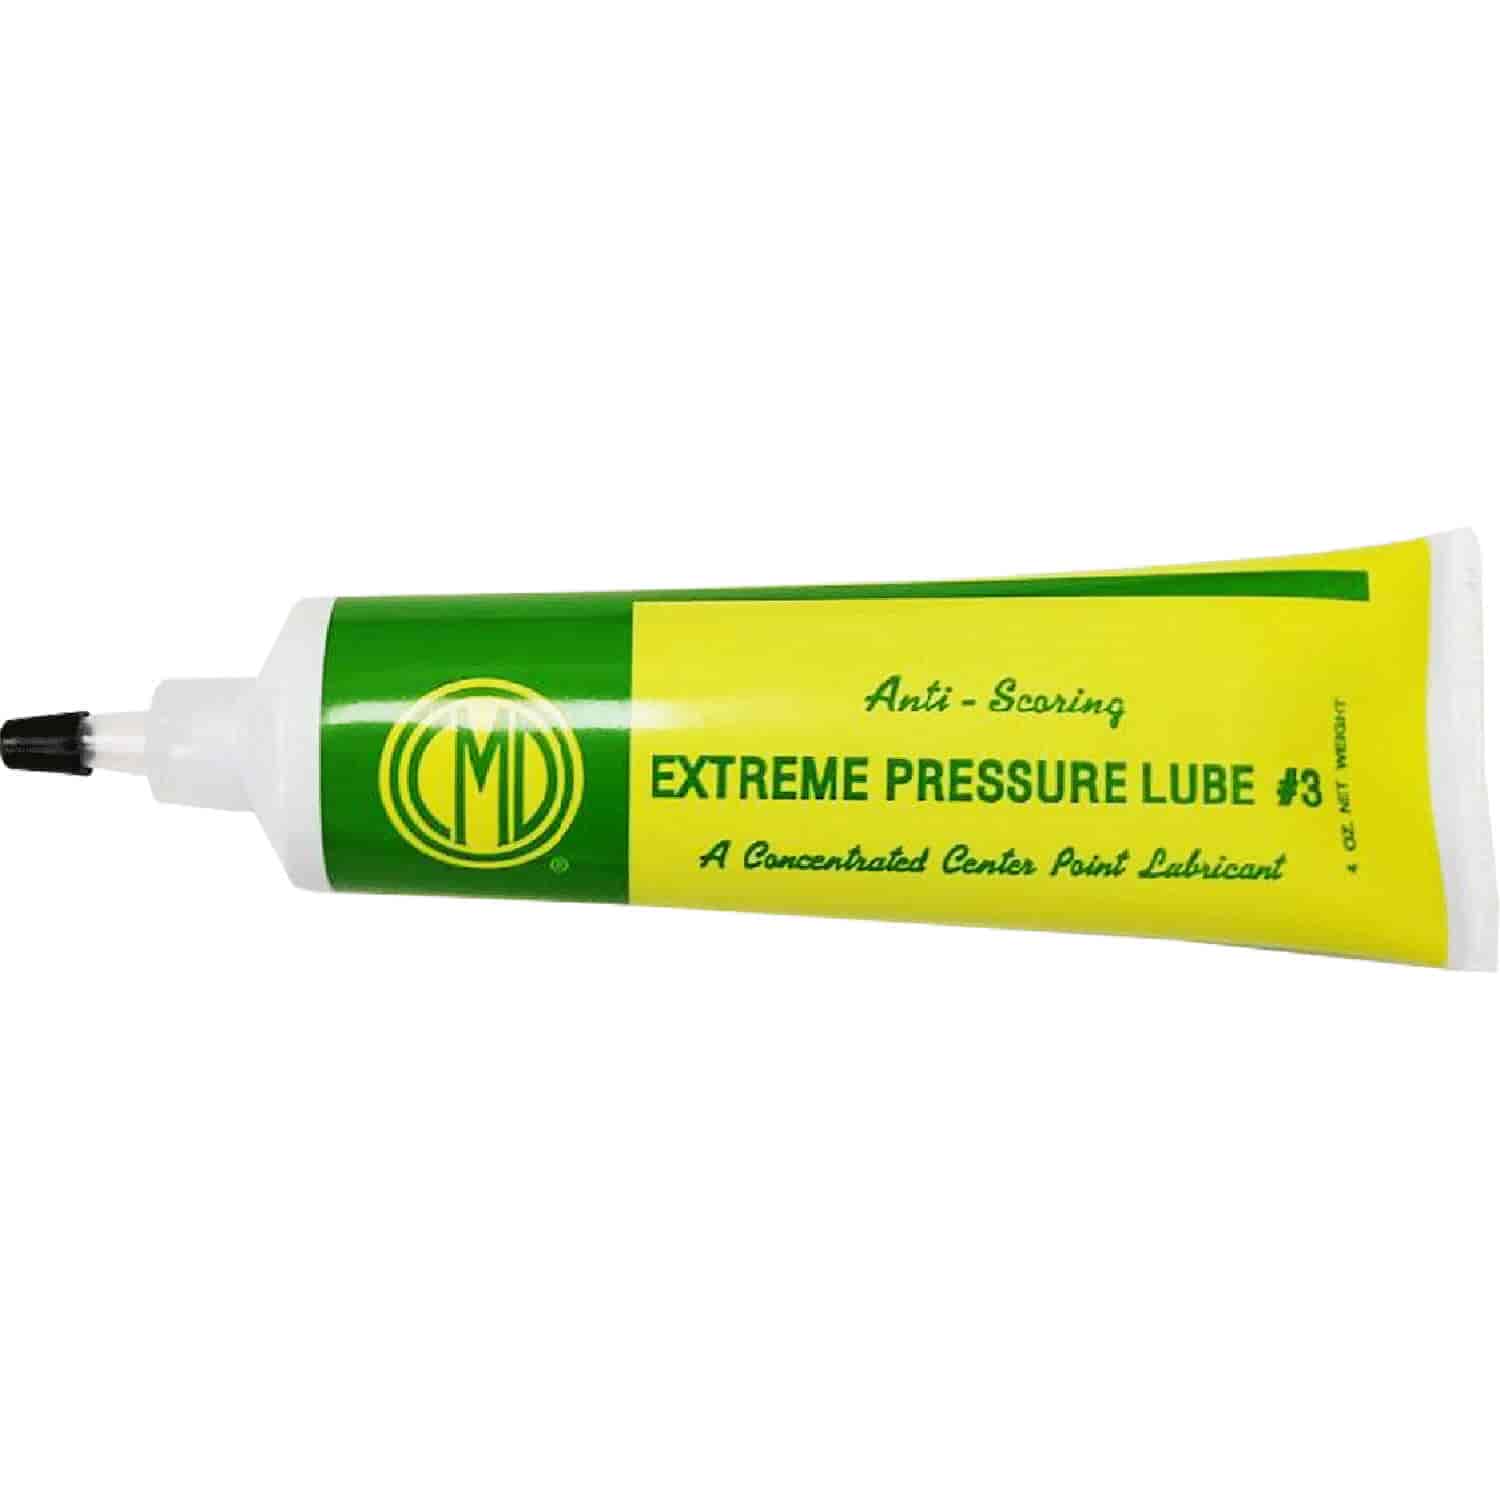 CMD Extreme Pressure Lubricant